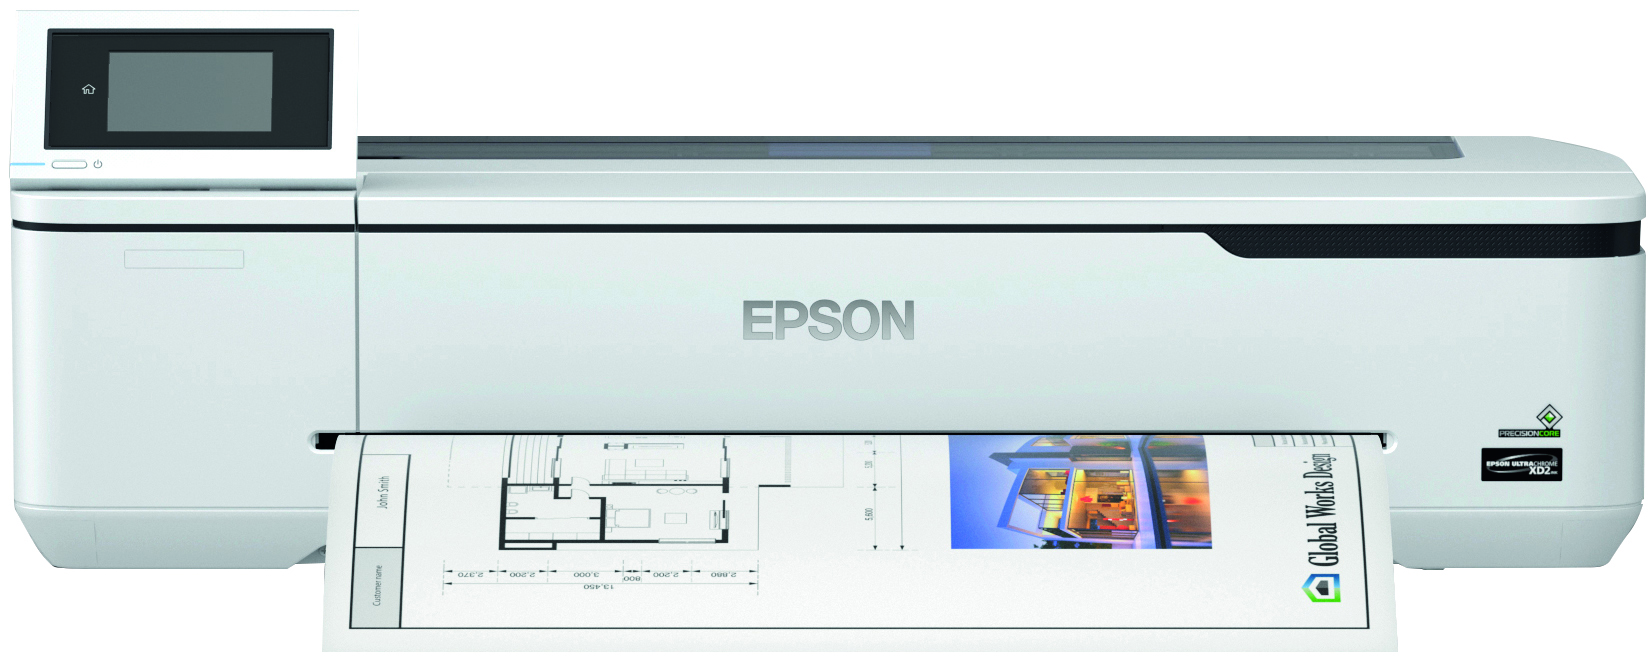 Epson T3100